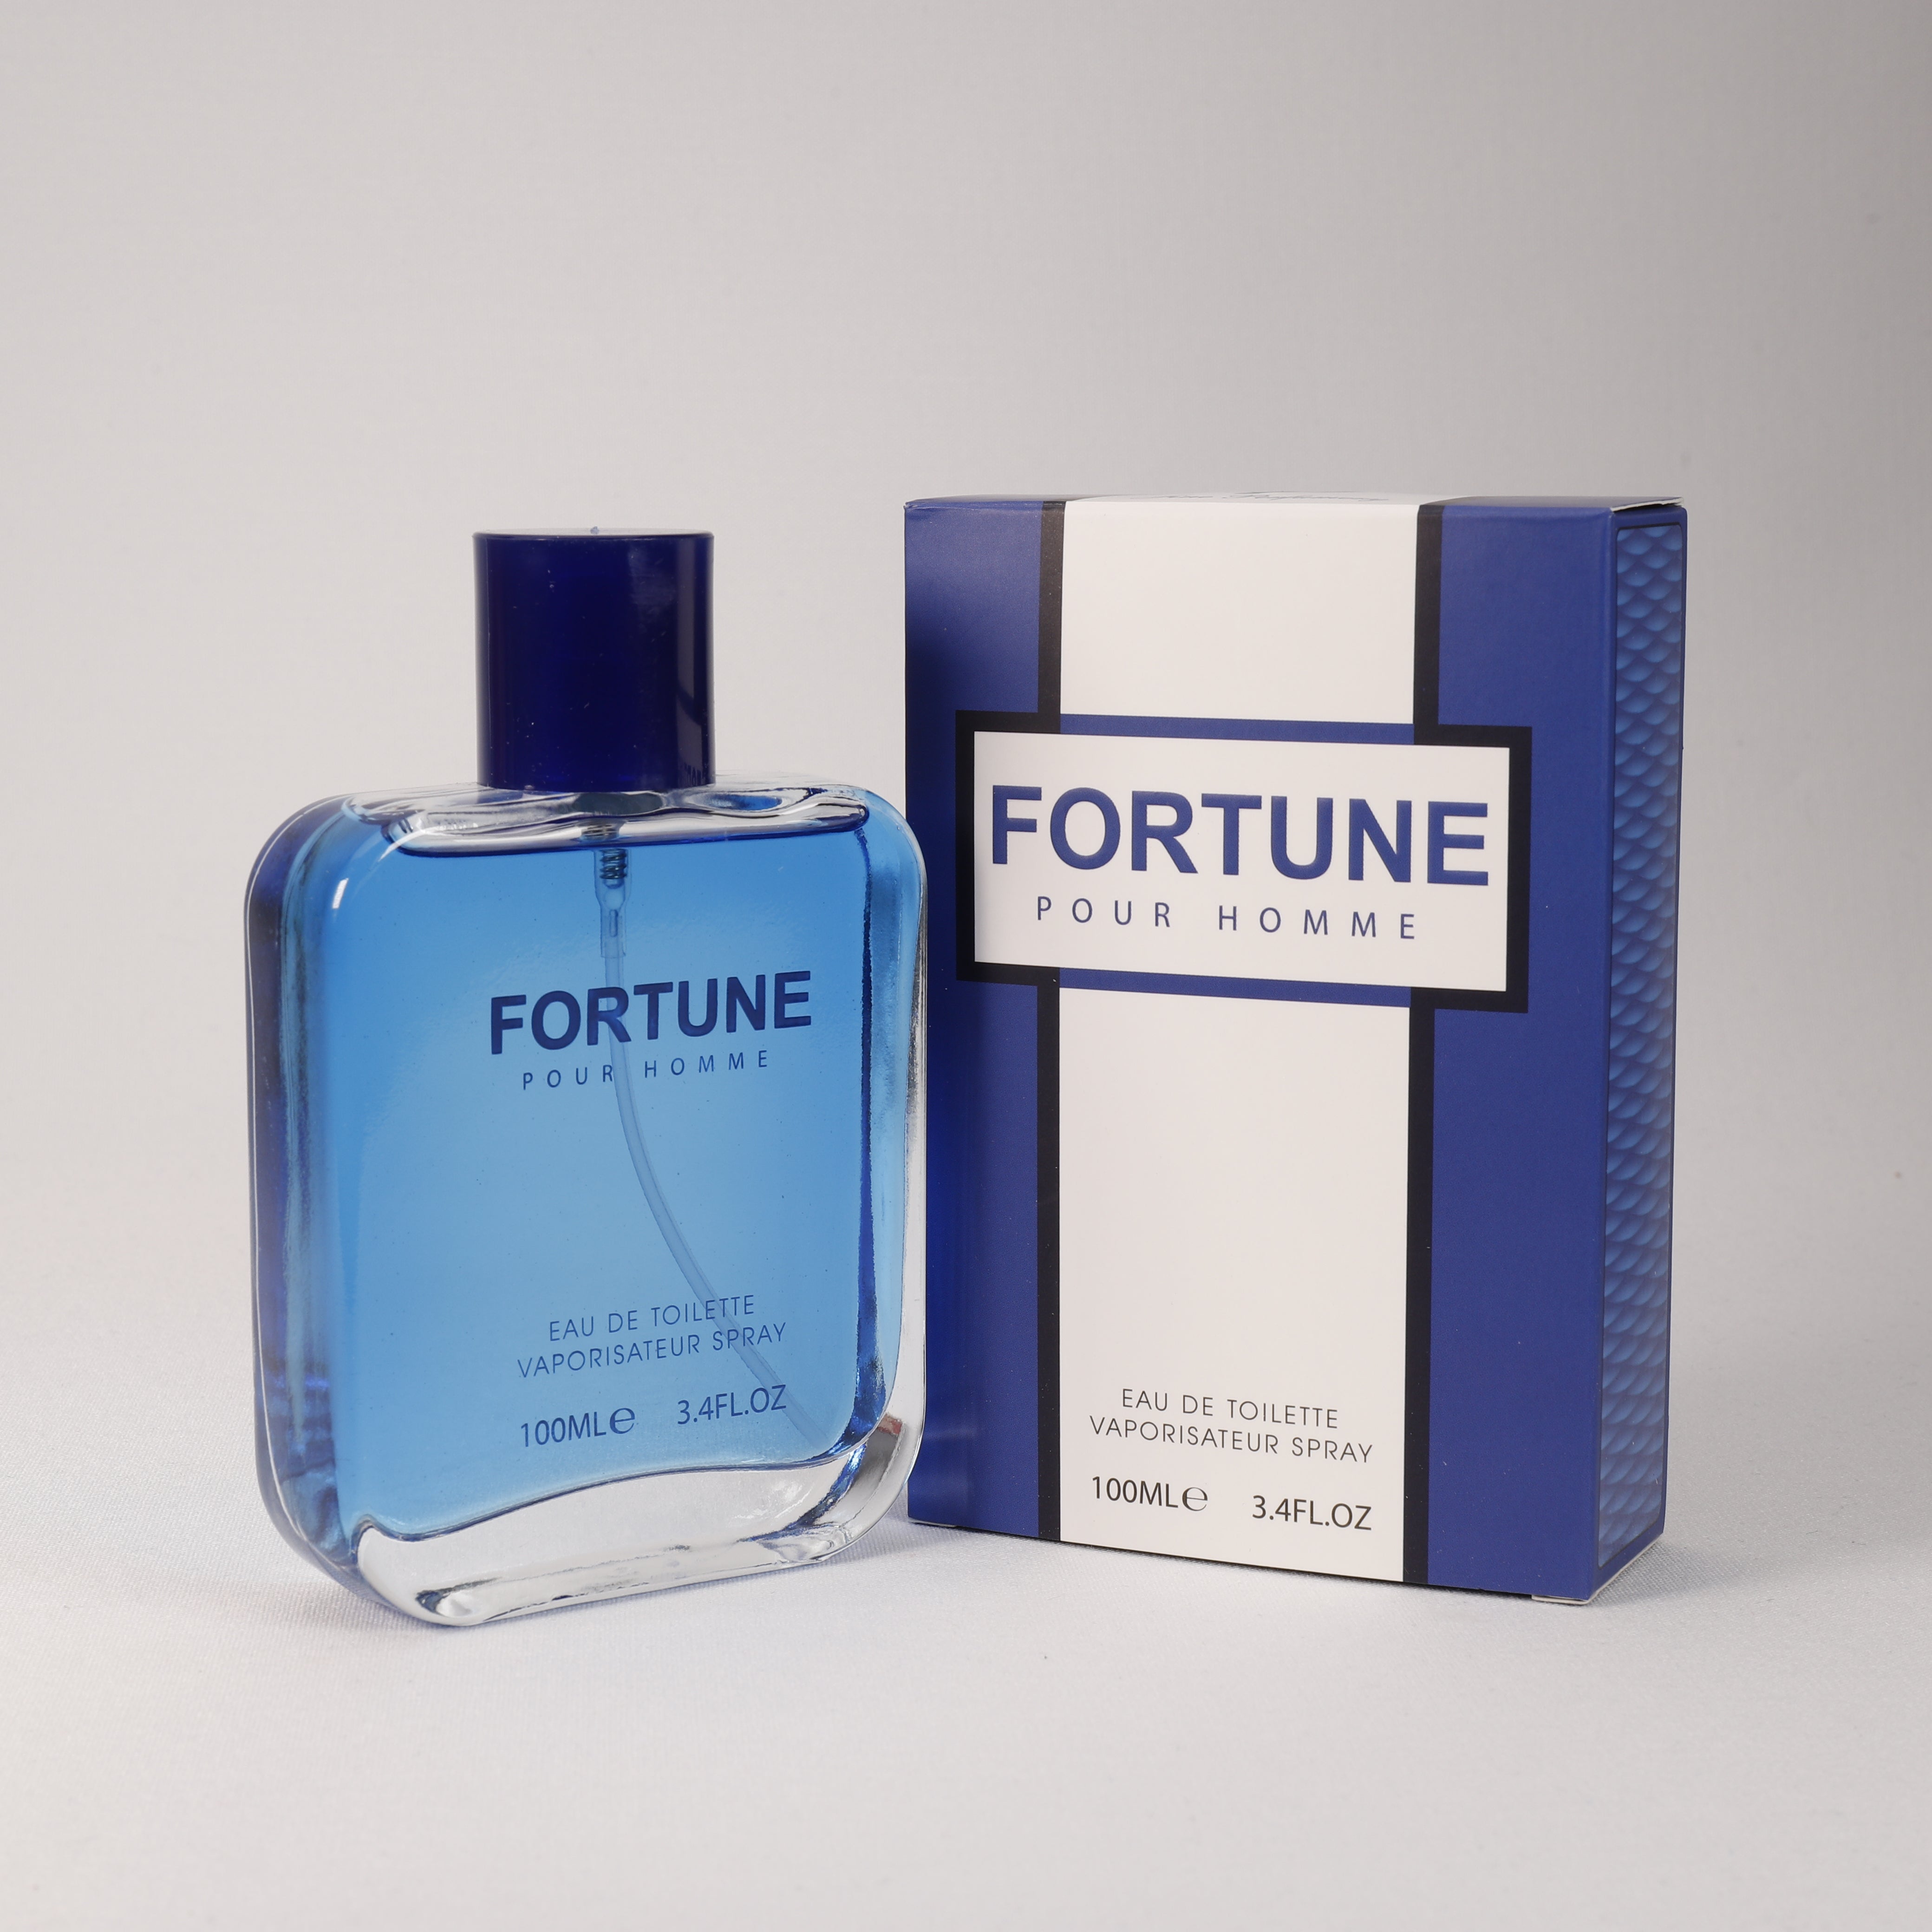 Fortune für Herren, Vaporizer mit natürlichem Spray, 100 ml Duft, Parfum, TOP Parfüm, NEU OVP